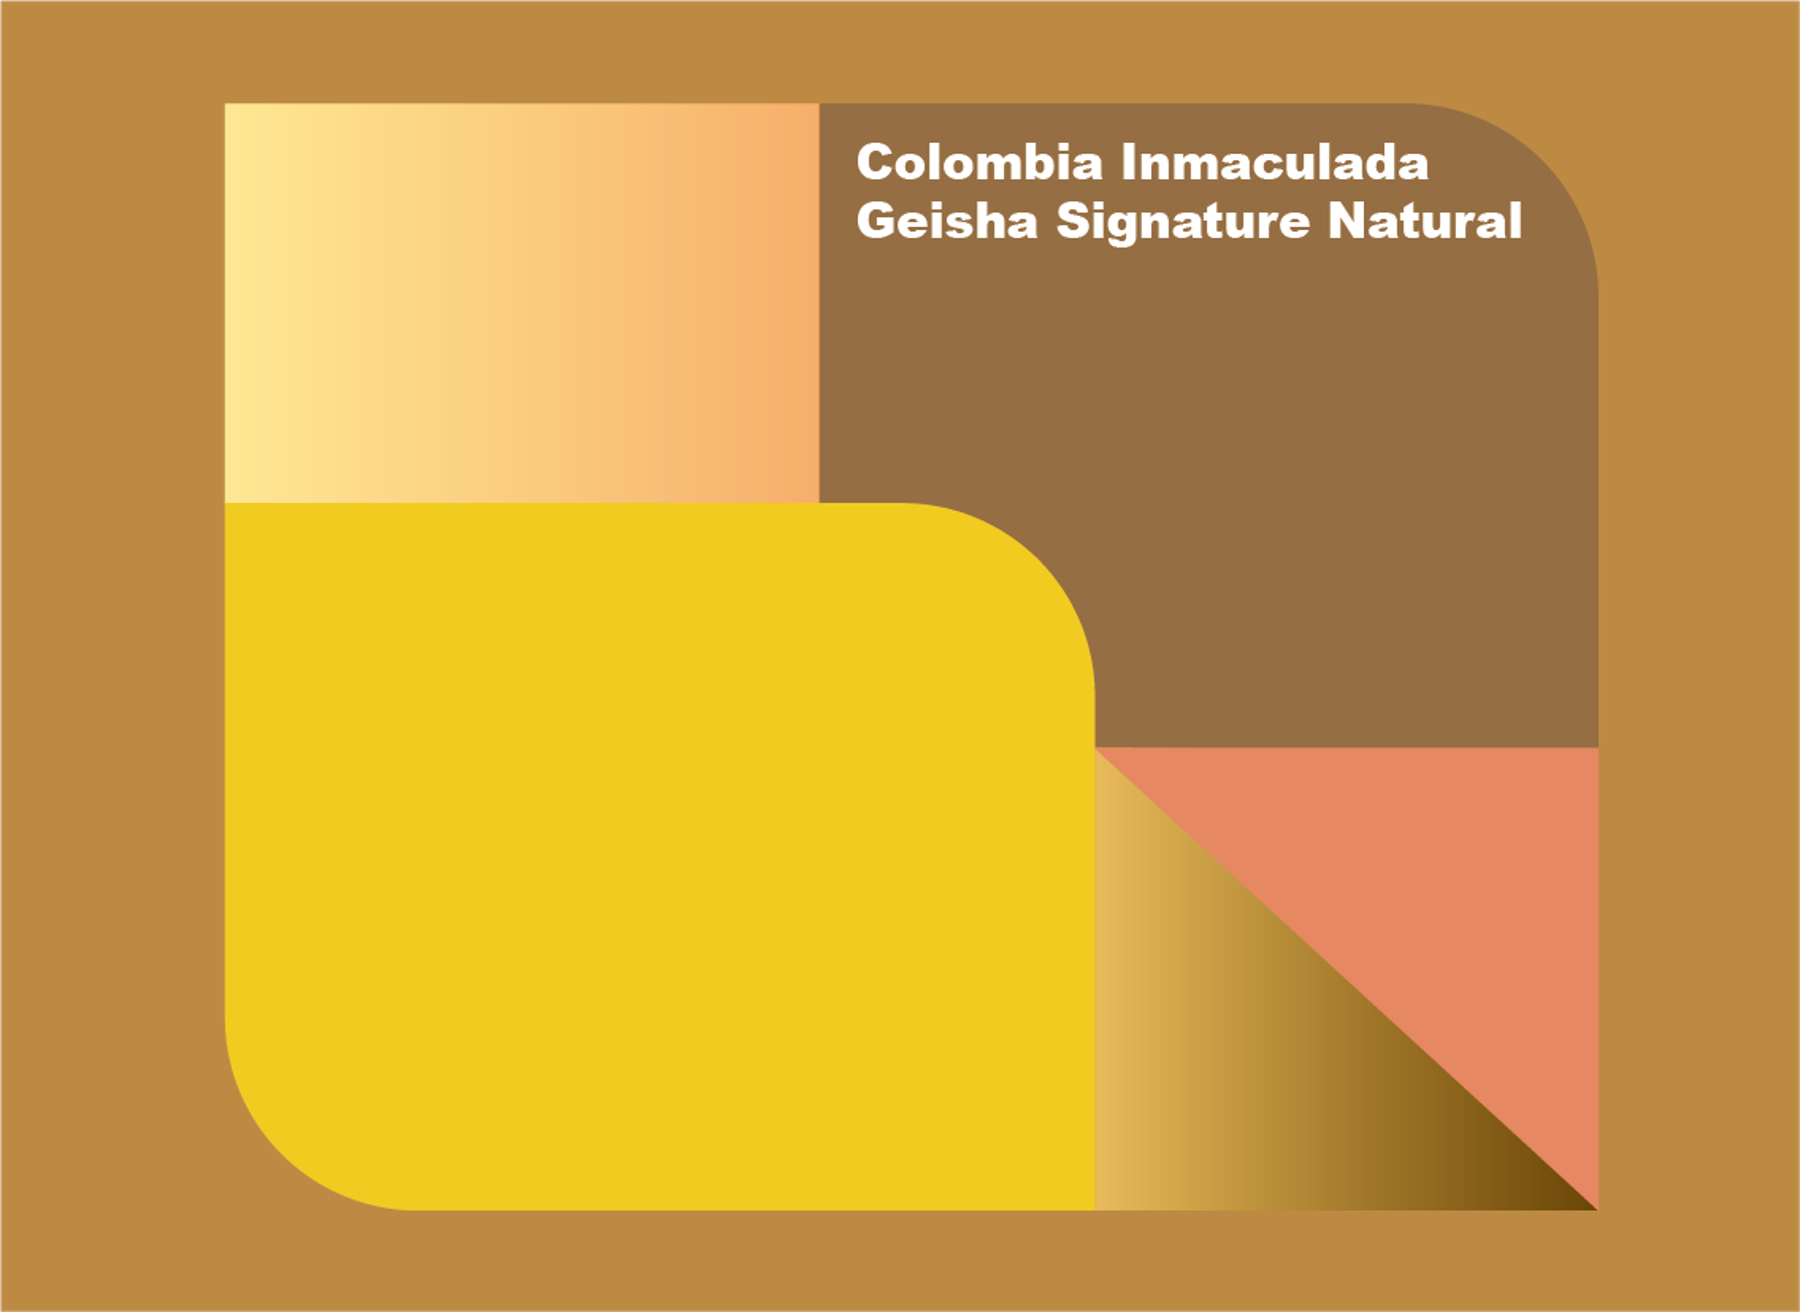 콜롬비아 인마쿨라다 게이샤 시그니처  Inmaculada Geisha Signature  (Natural) 100g